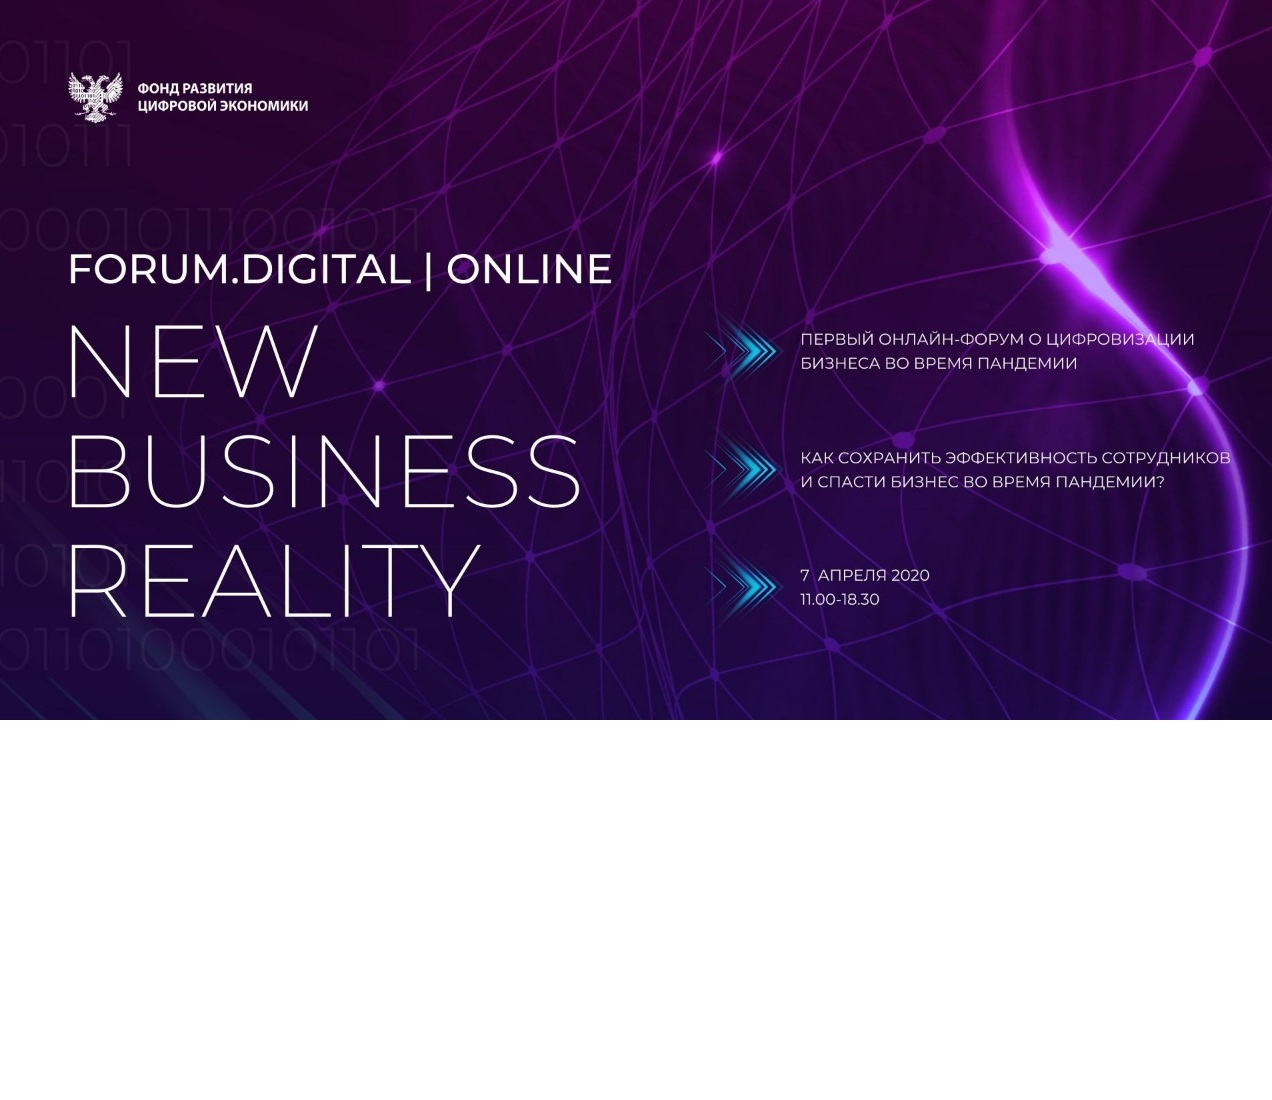 МИД «ЕвроМедиа» выступает информационным партнером первого онлайн-форума о цифровизации бизнеса во время пандемии Forum.Digital New Business Reality